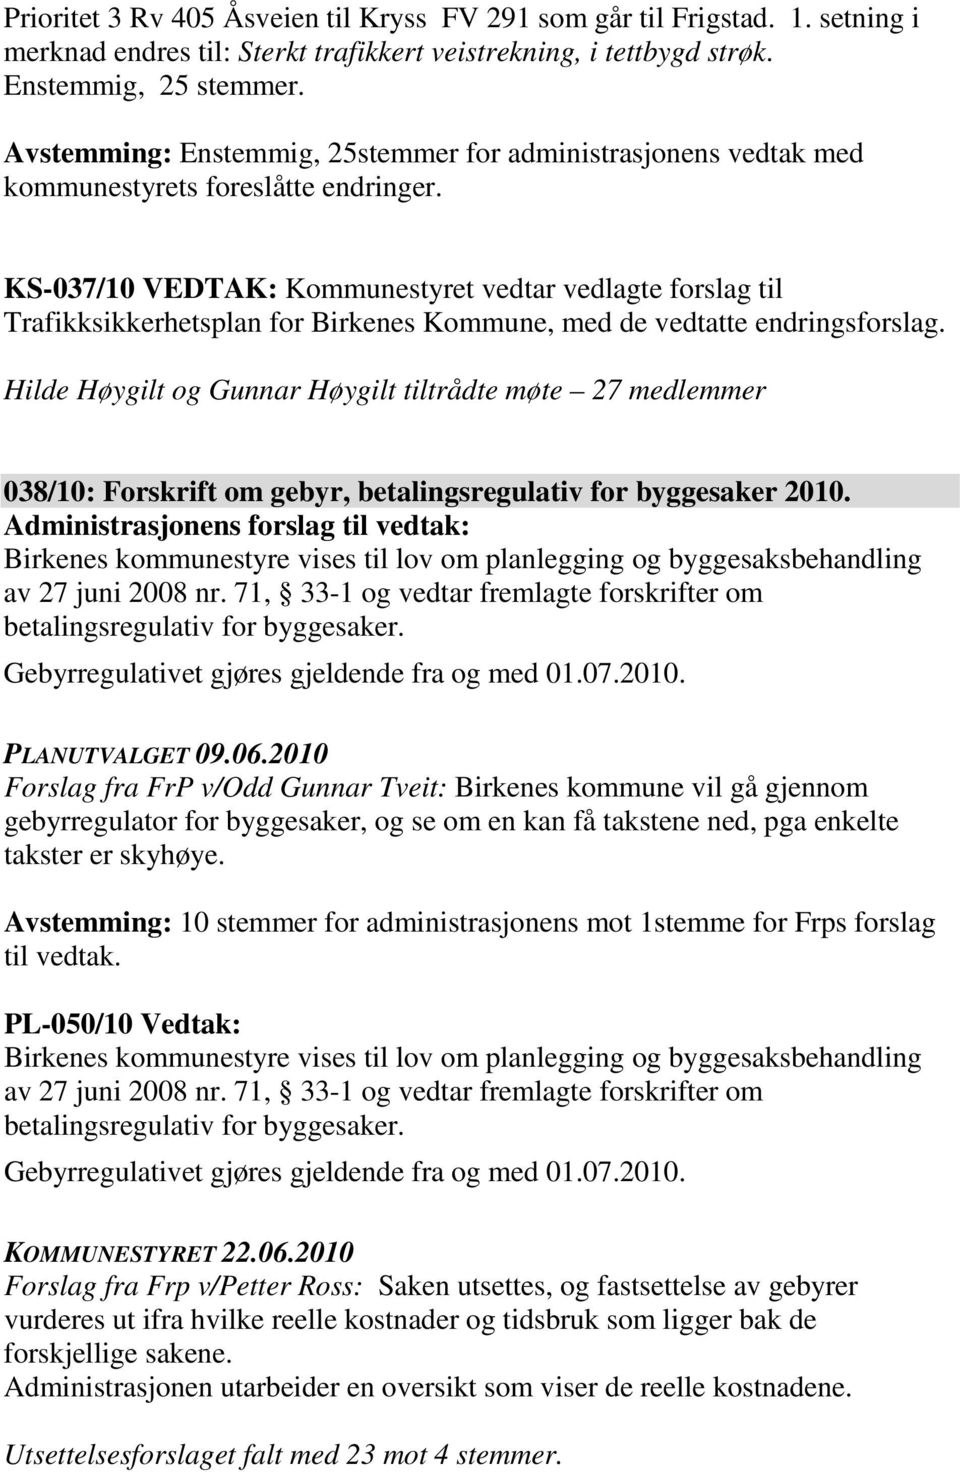 KS-037/10 VEDTAK: Kommunestyret vedtar vedlagte forslag til Trafikksikkerhetsplan for Birkenes Kommune, med de vedtatte endringsforslag.